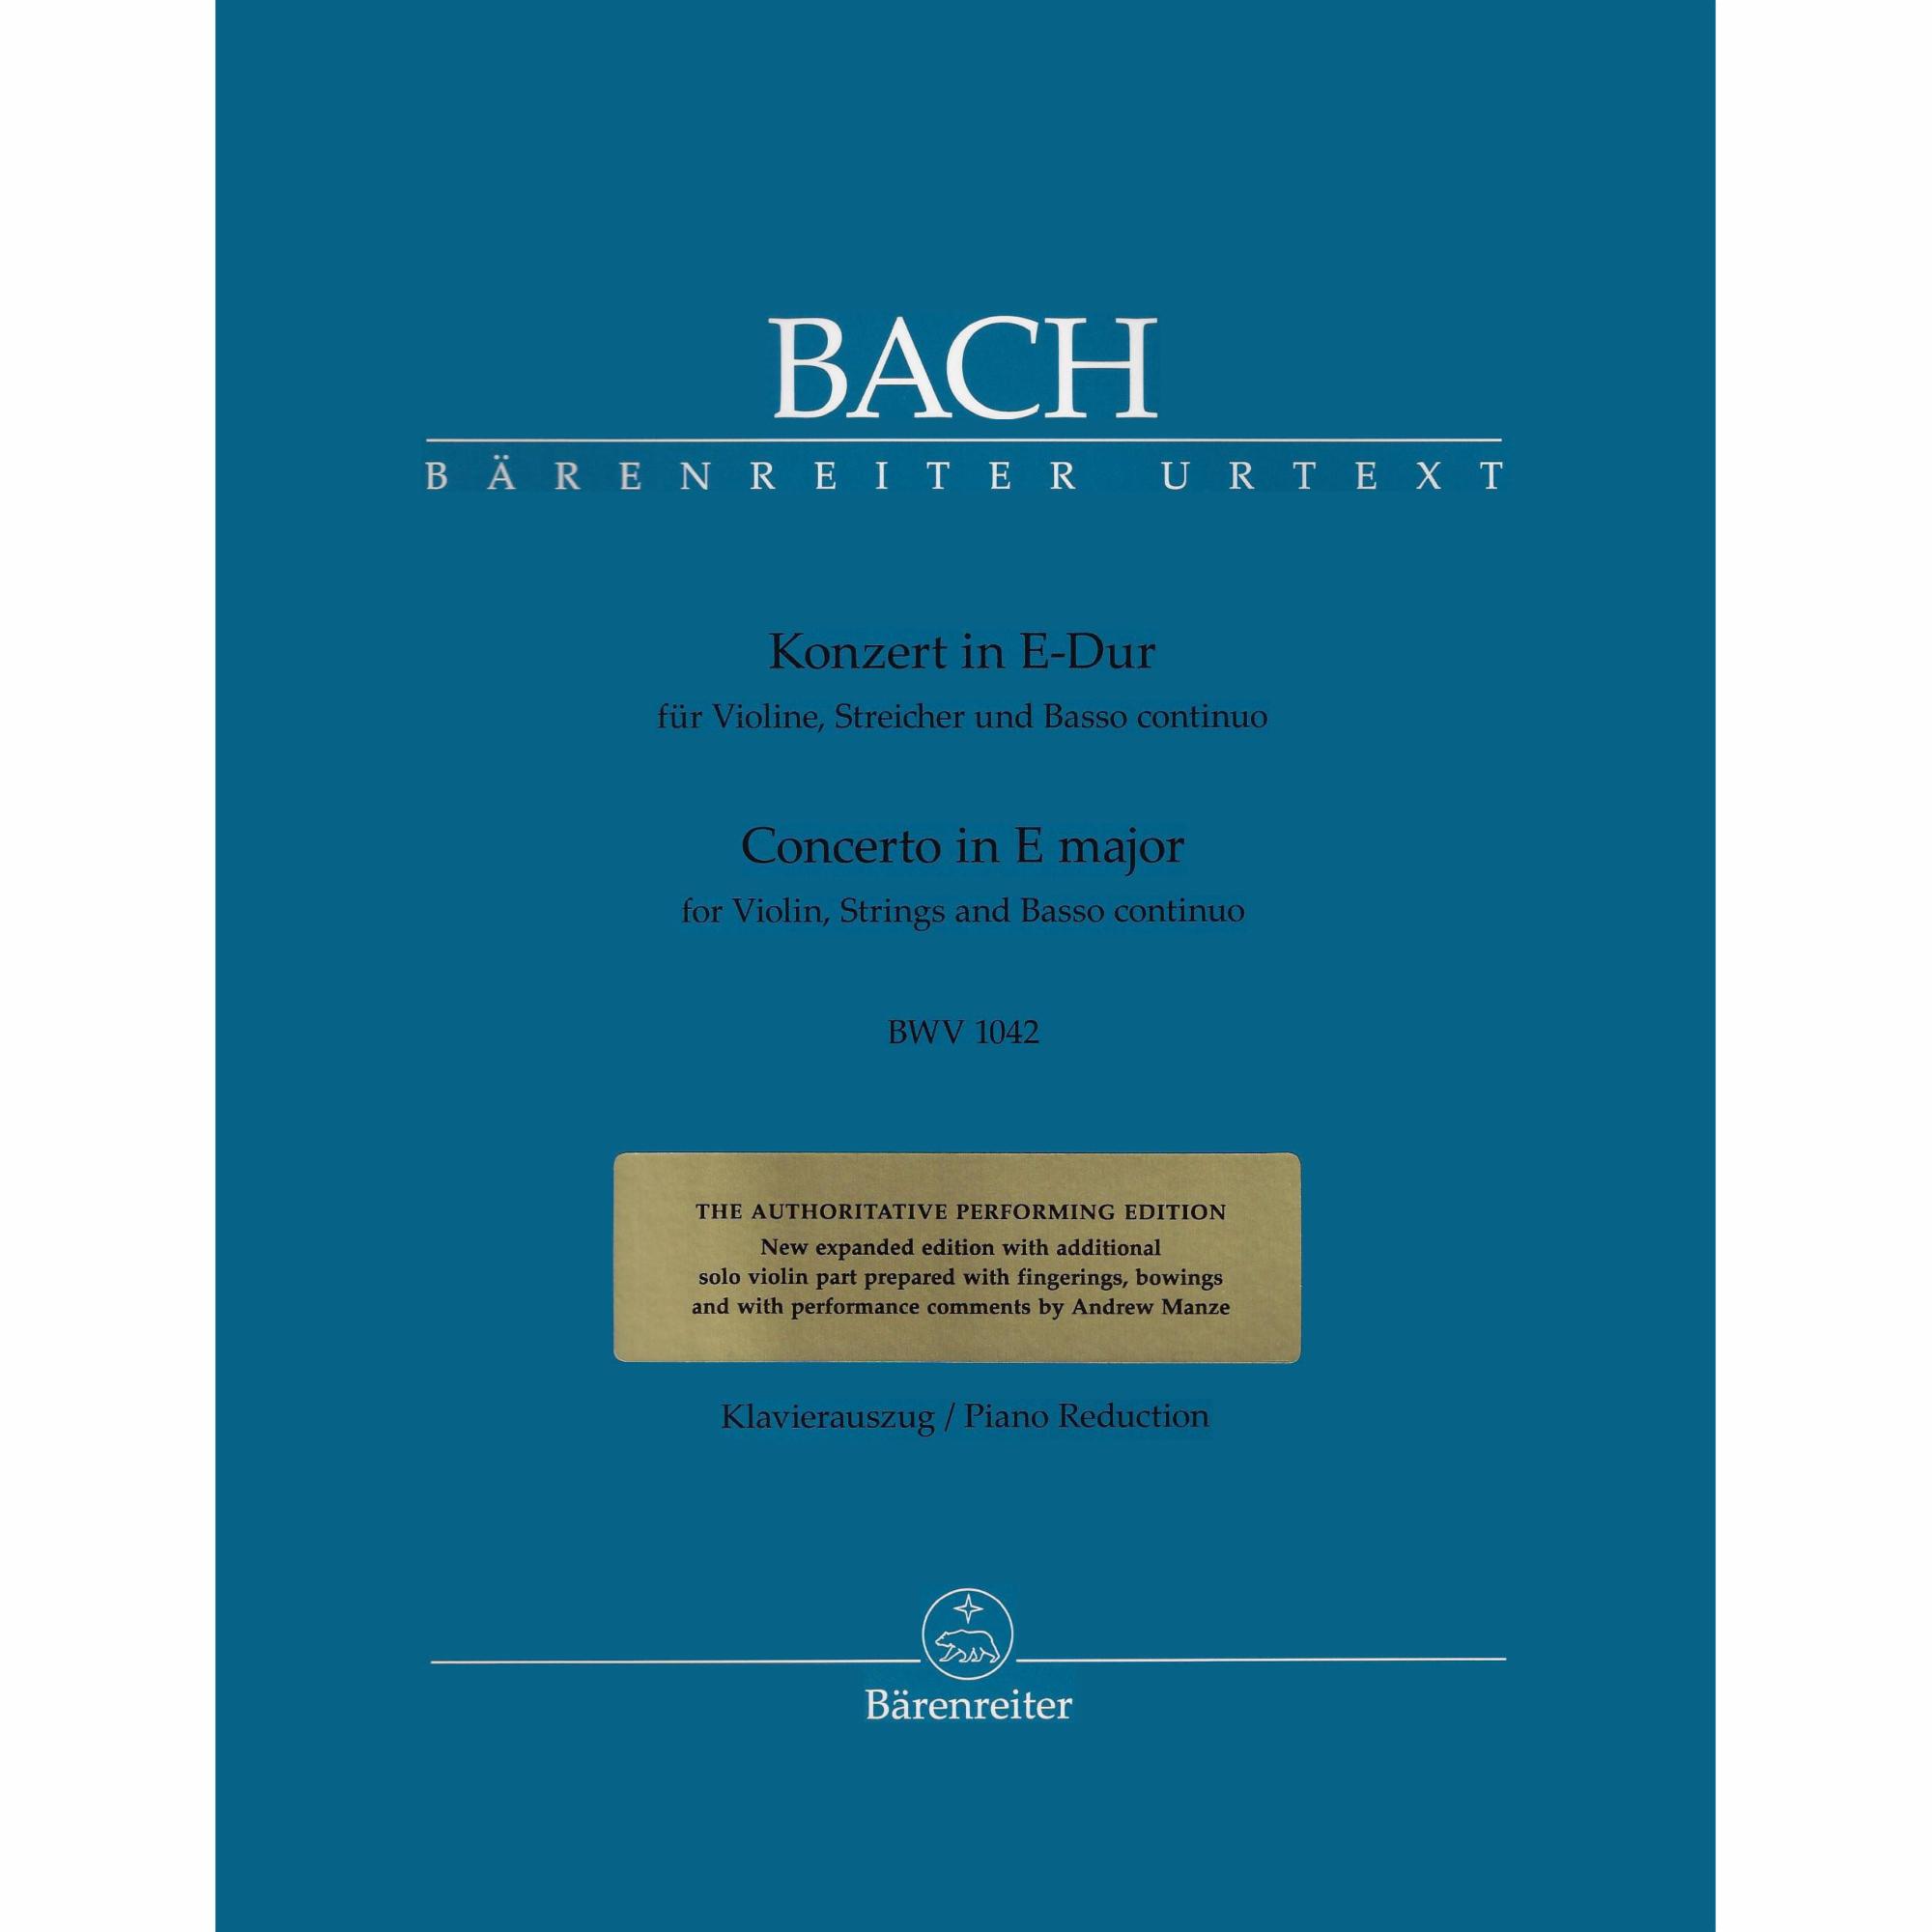 Bach -- Concerto in E Major, BWV 1042 for Violin and Piano